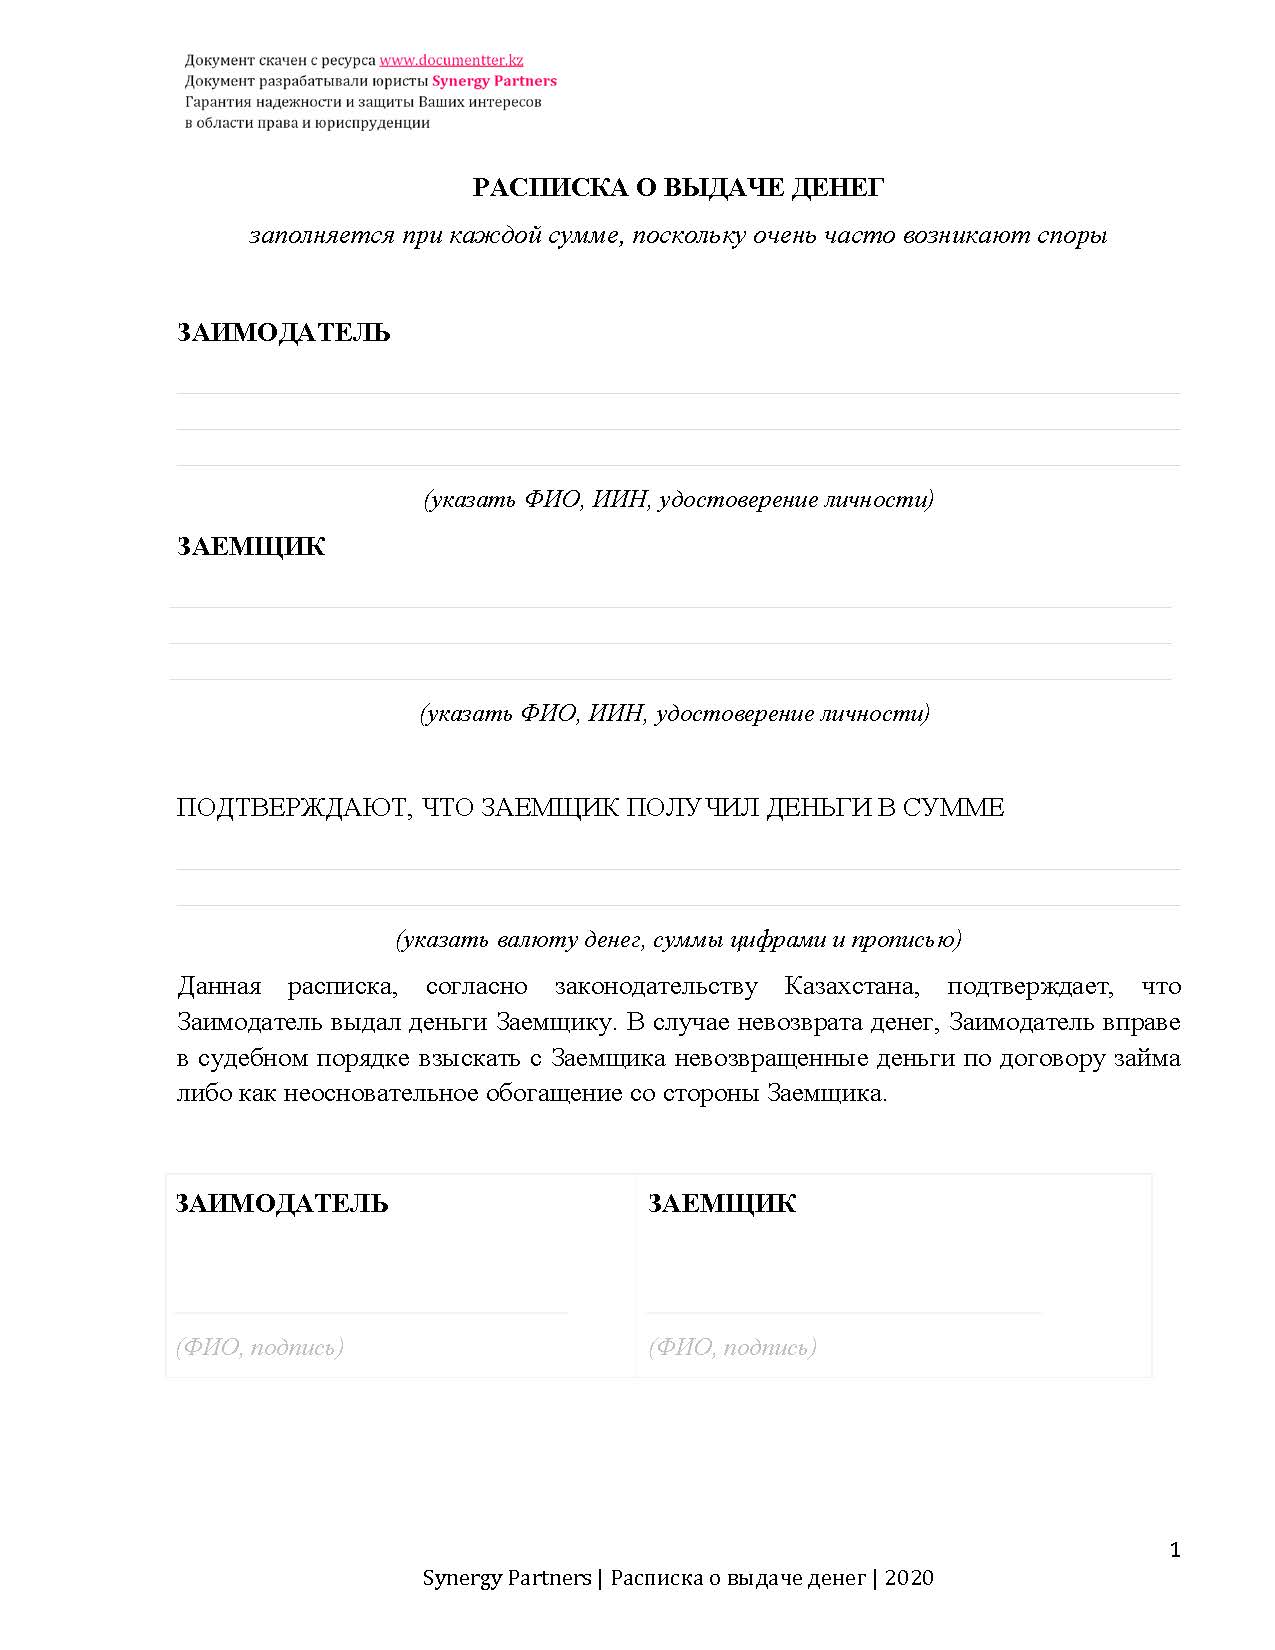 Расписка о выдаче займа | documentterkz.com в Казахстане